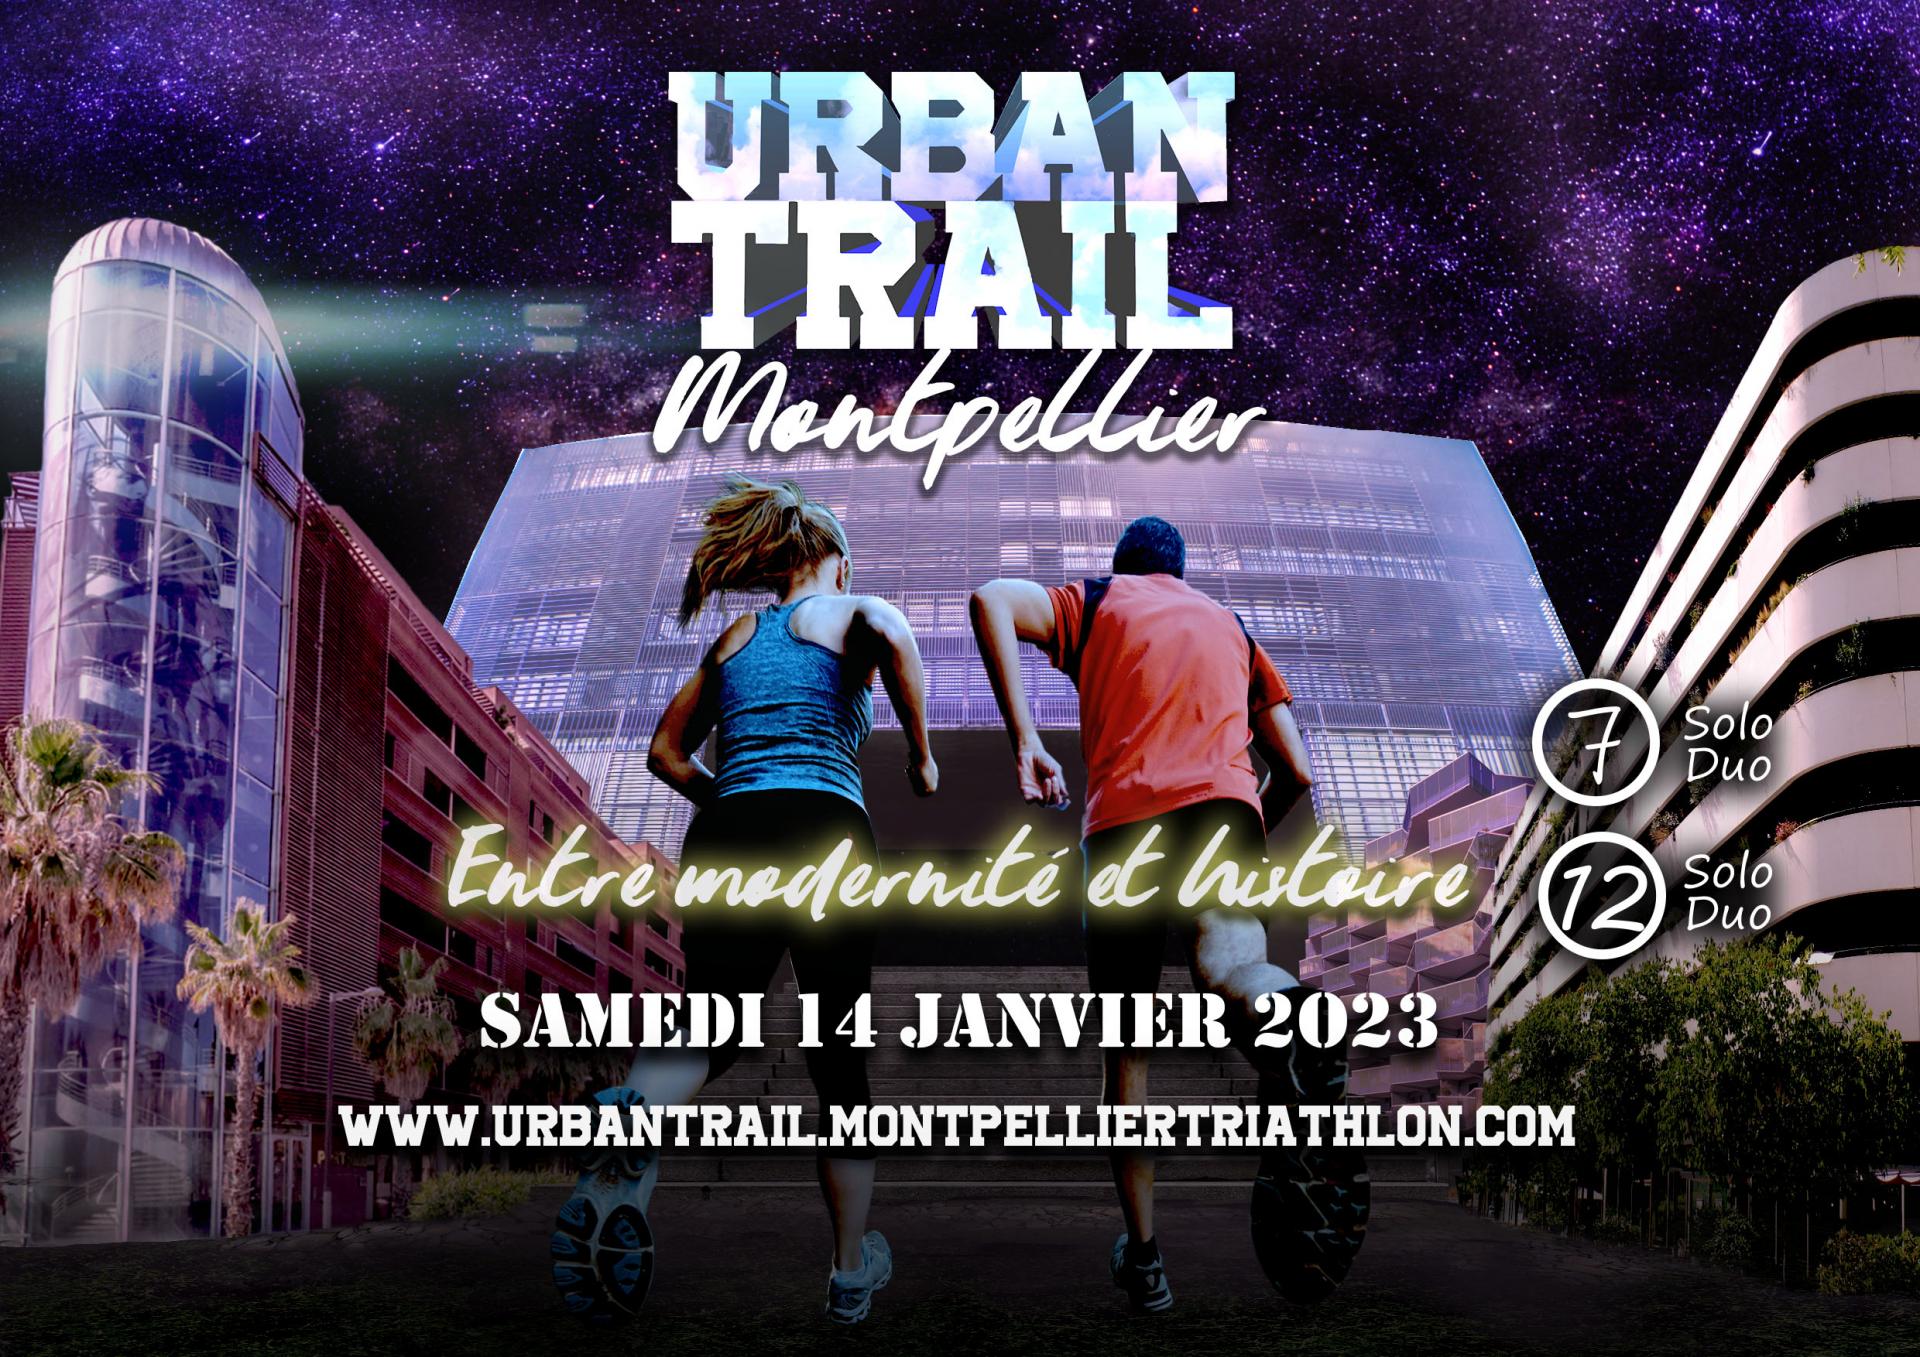 Affiche urban trail montpellier 14janv2023